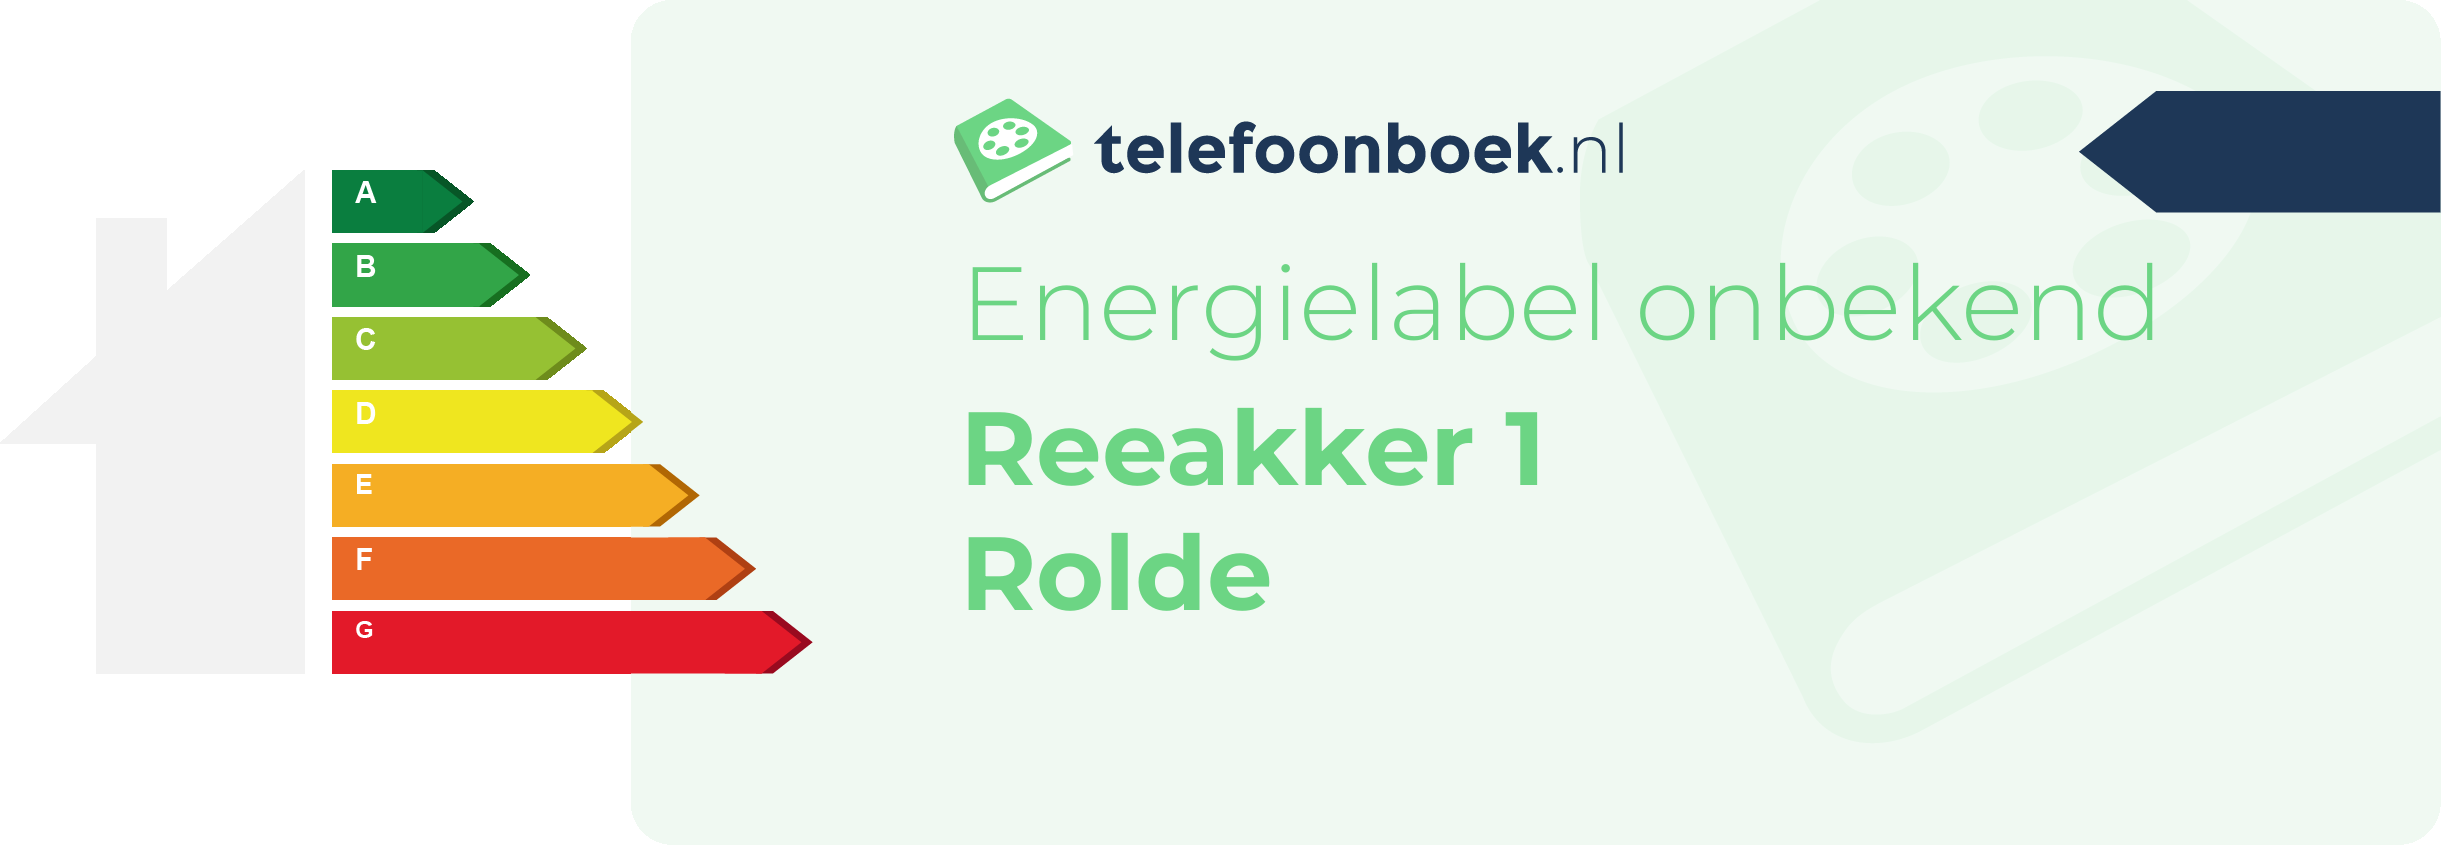 Energielabel Reeakker 1 Rolde